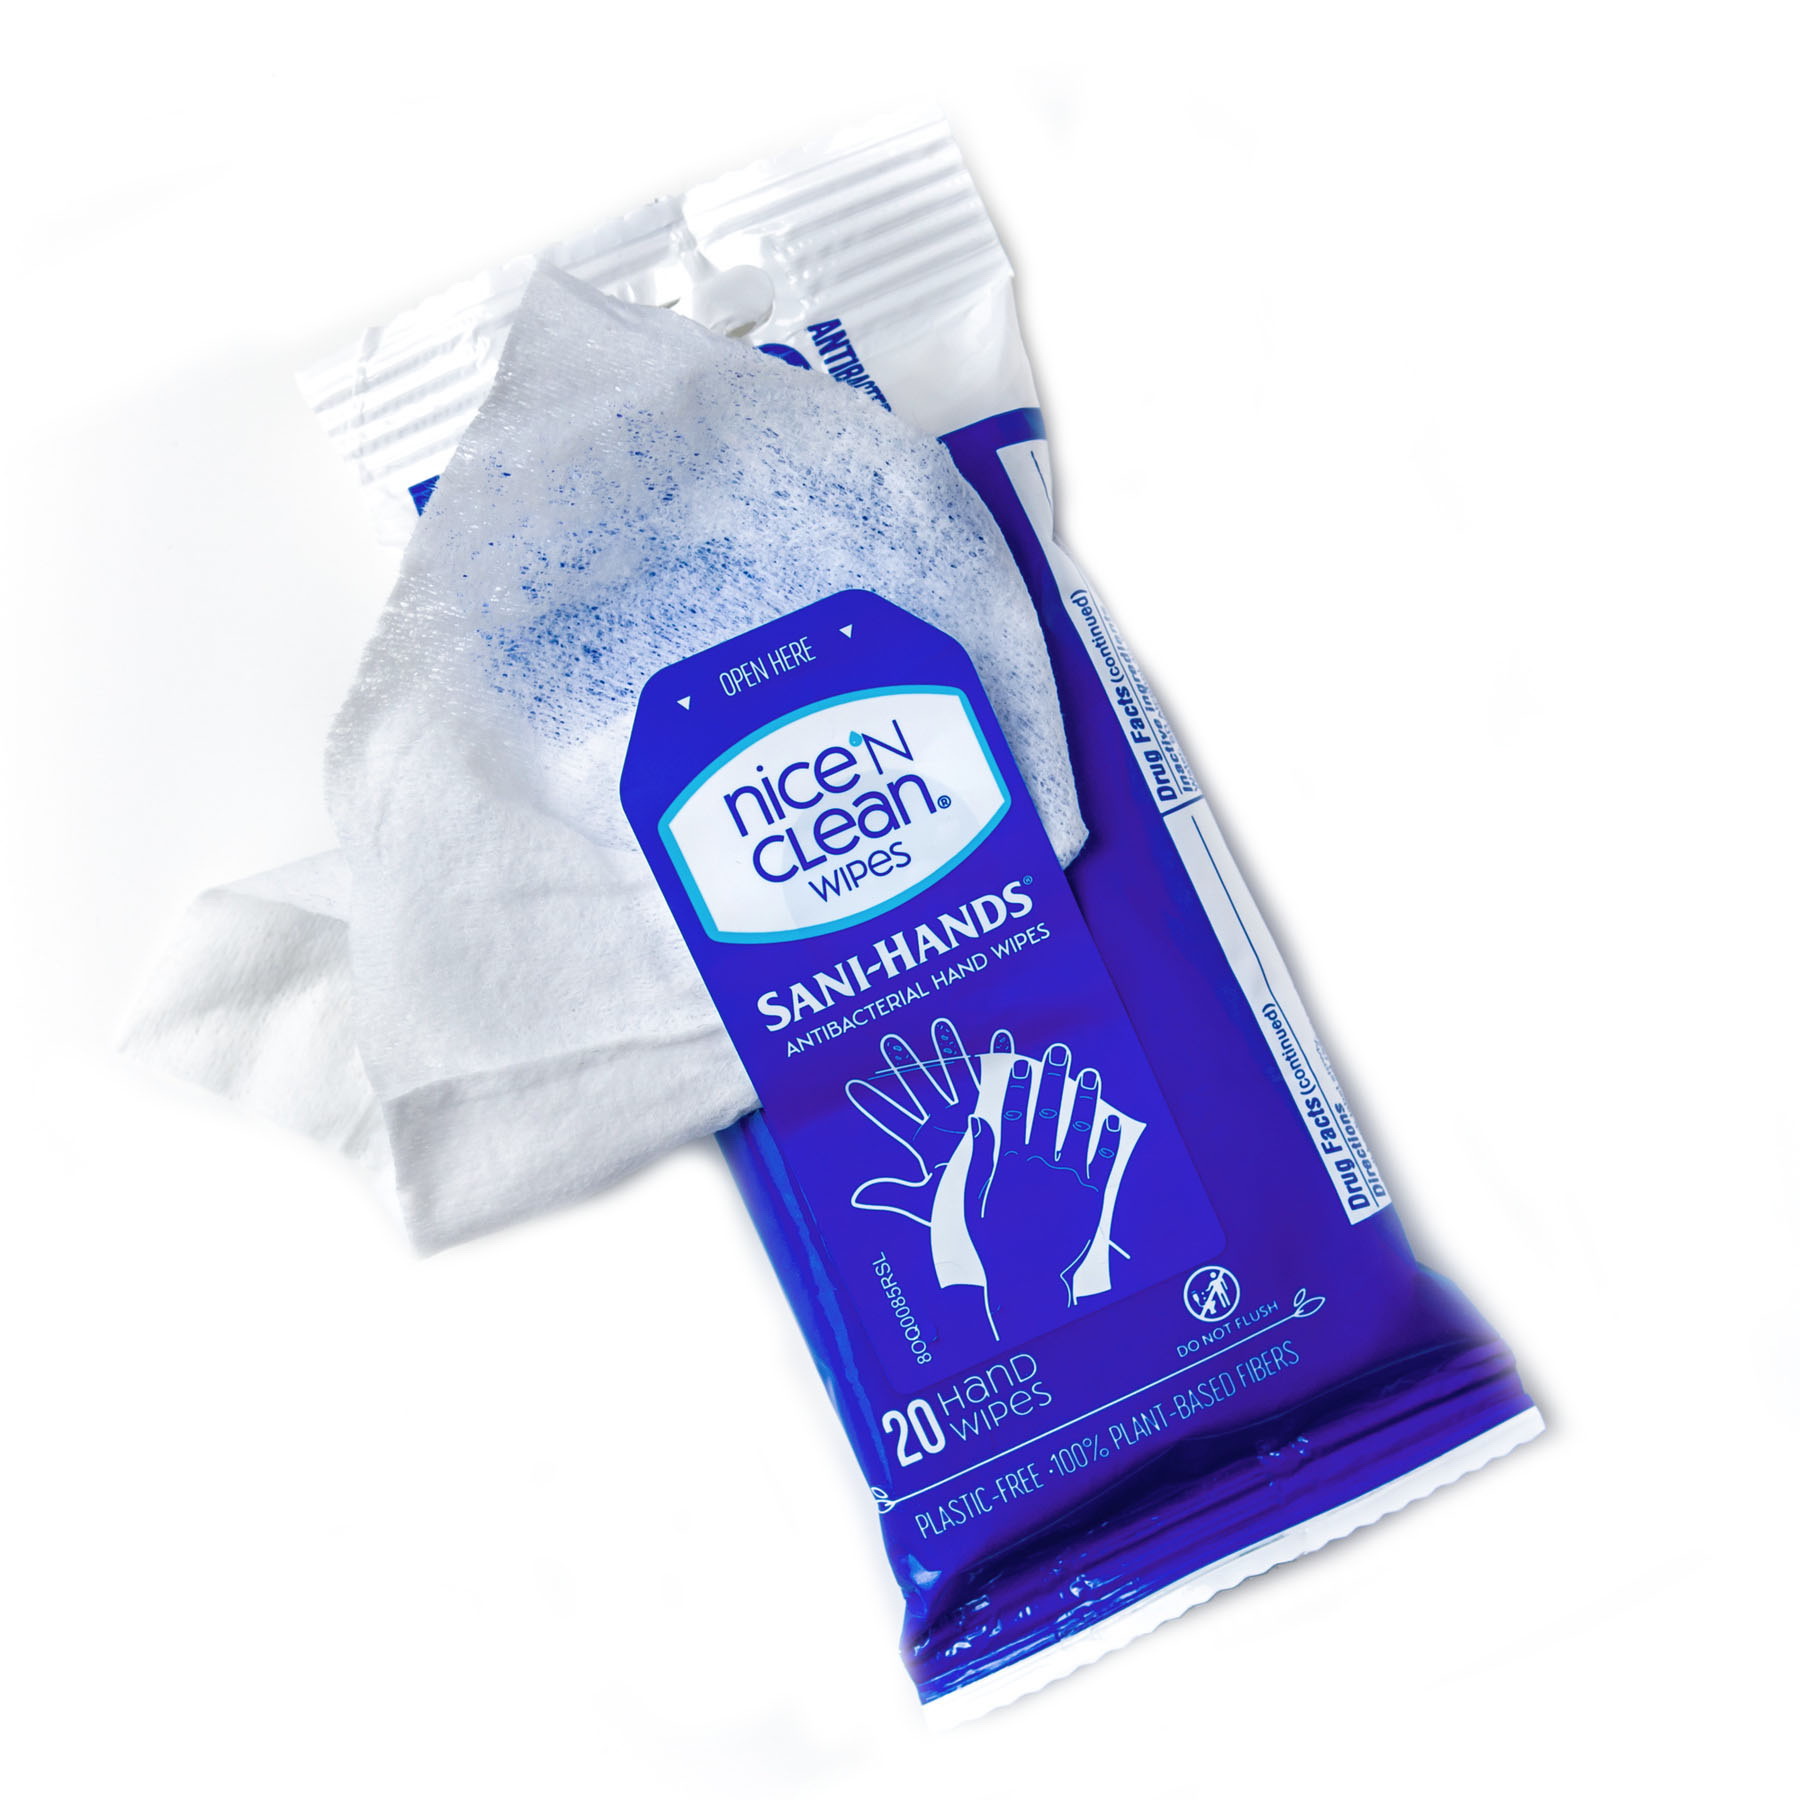 Antibacterial Hand Wipes | Antibacterial Wipes | Nice 'N CLEAN